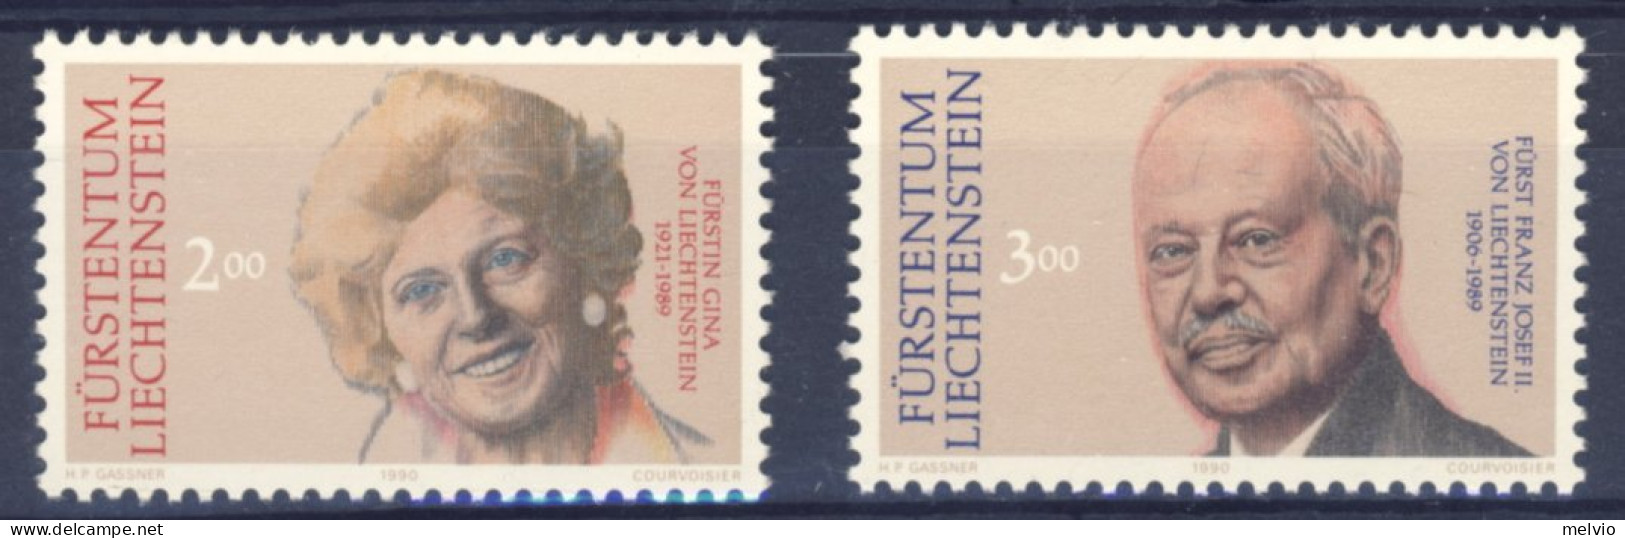 1990-Liechtenstein (MNH=**) Serie 2 Valori Principi - Ungebraucht